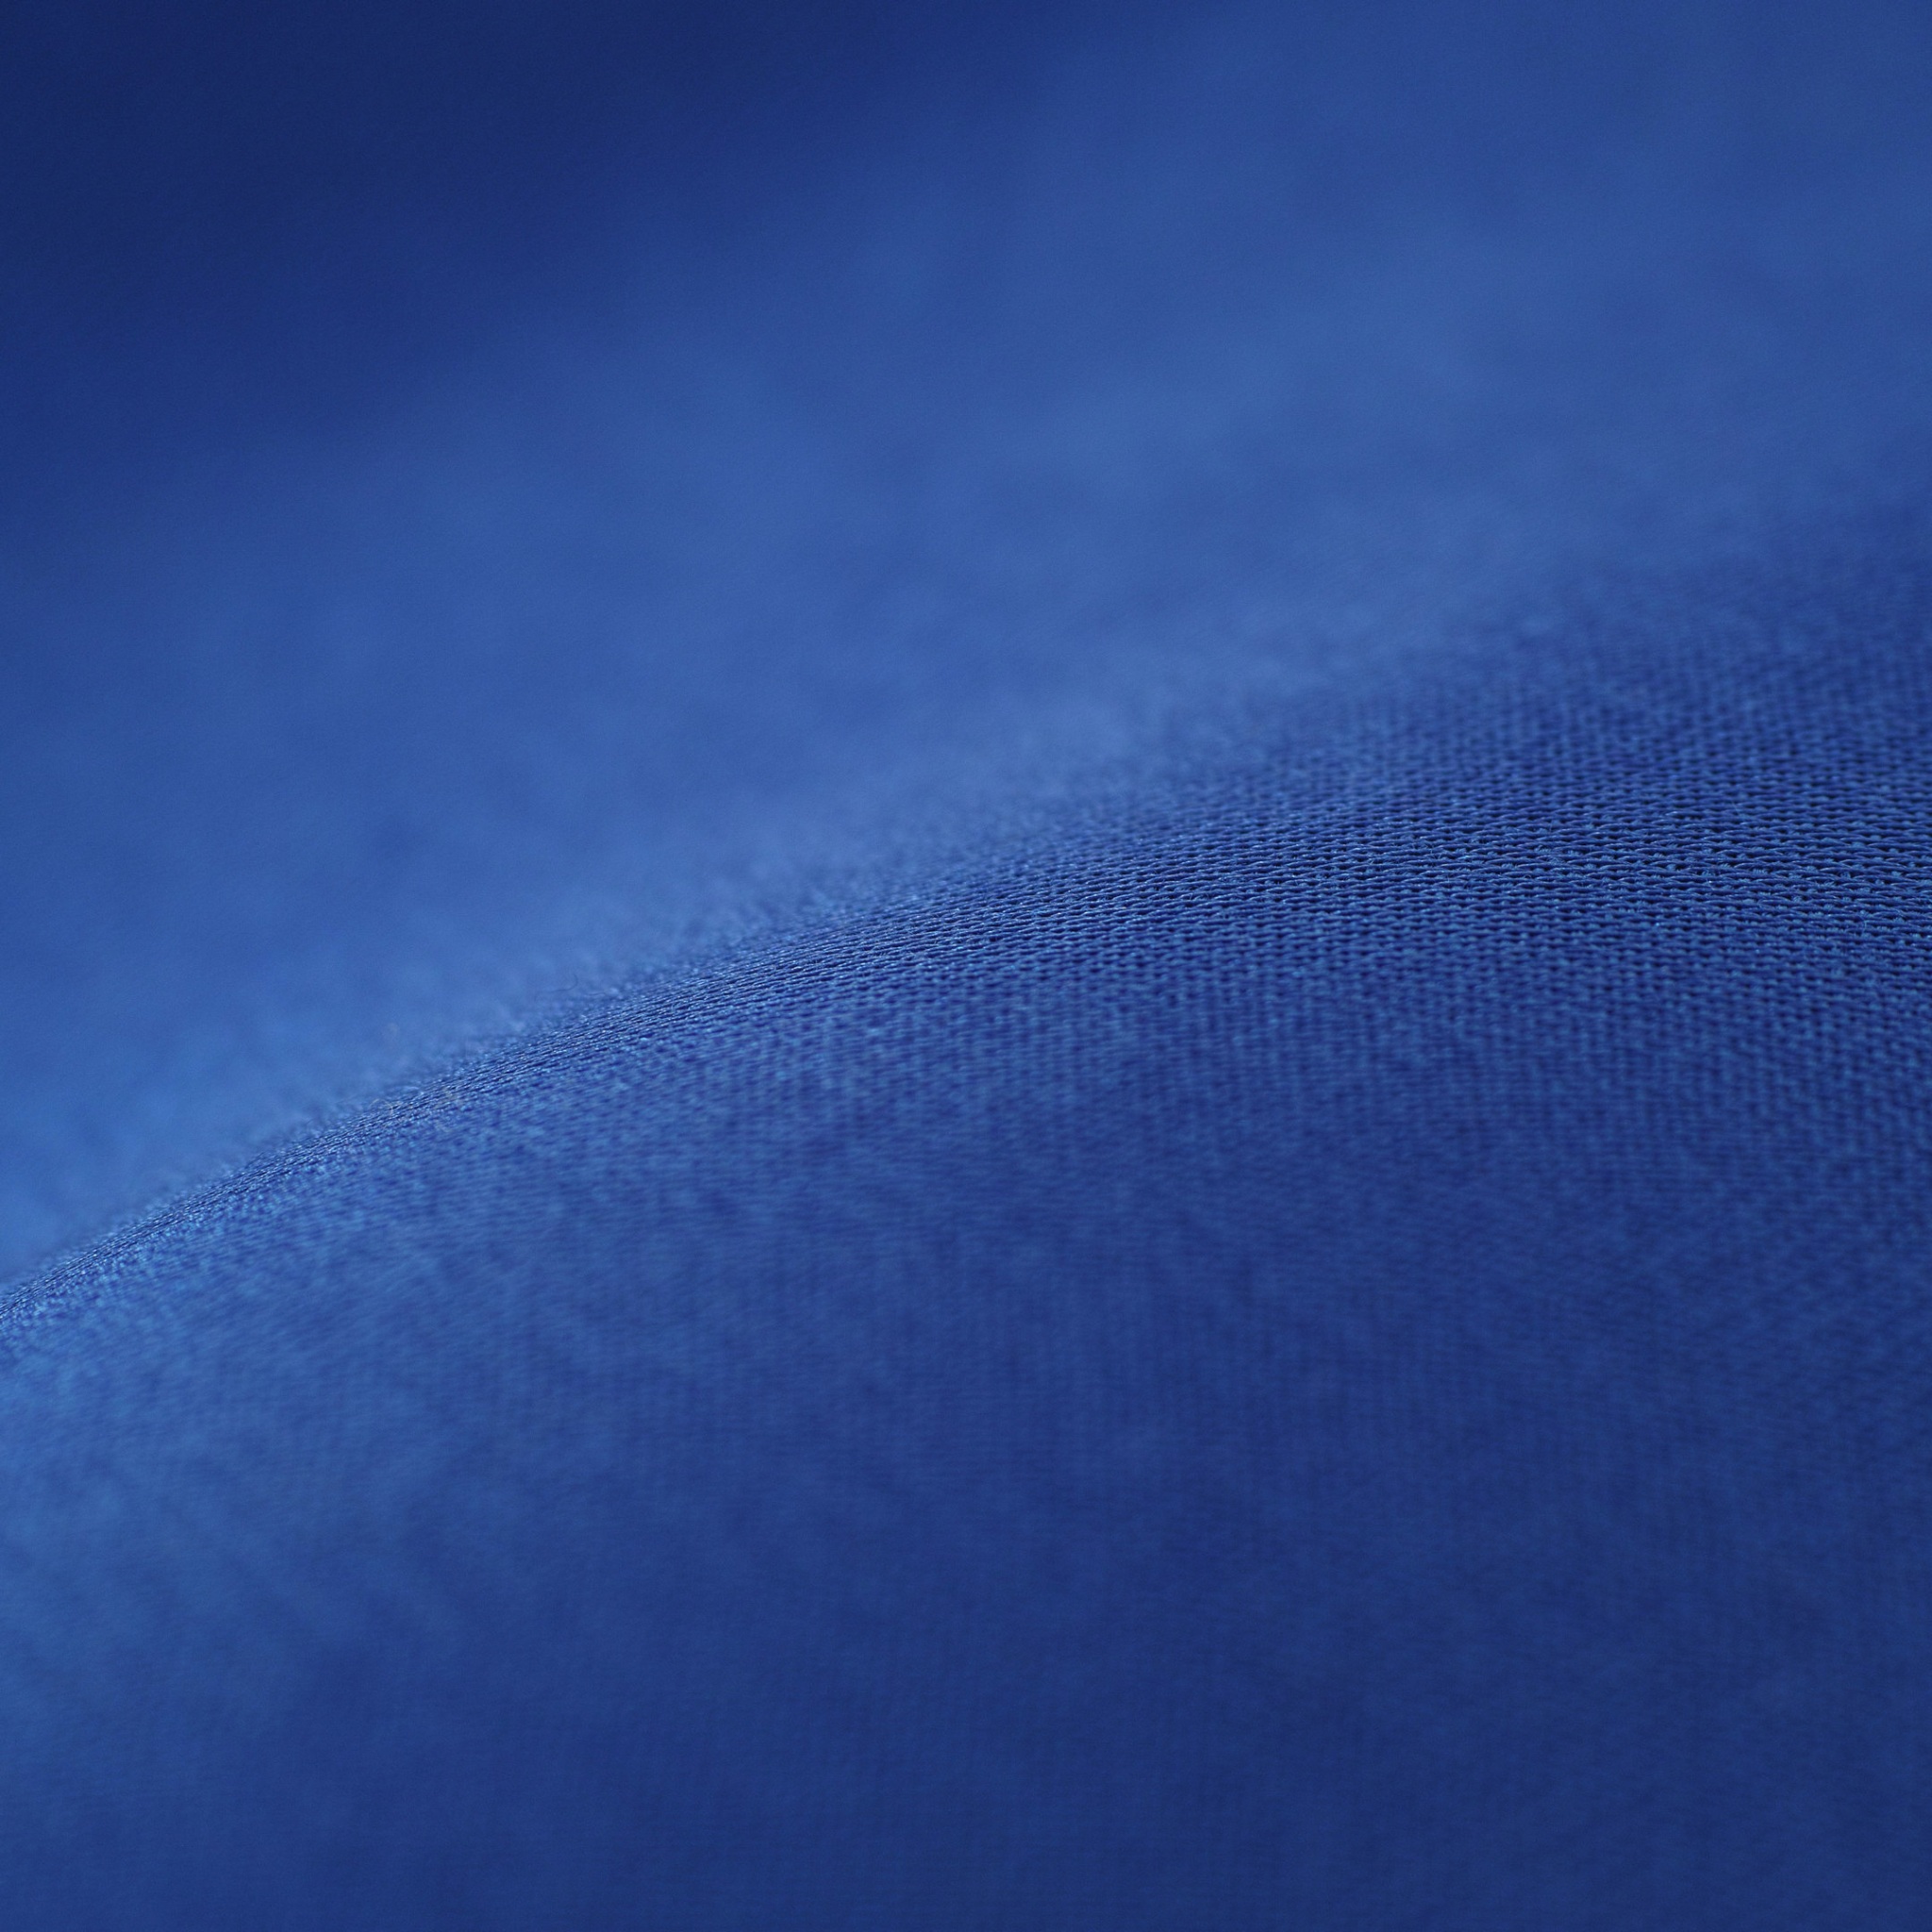 Blue Fabric Pattern 8k Wallpaper 4K